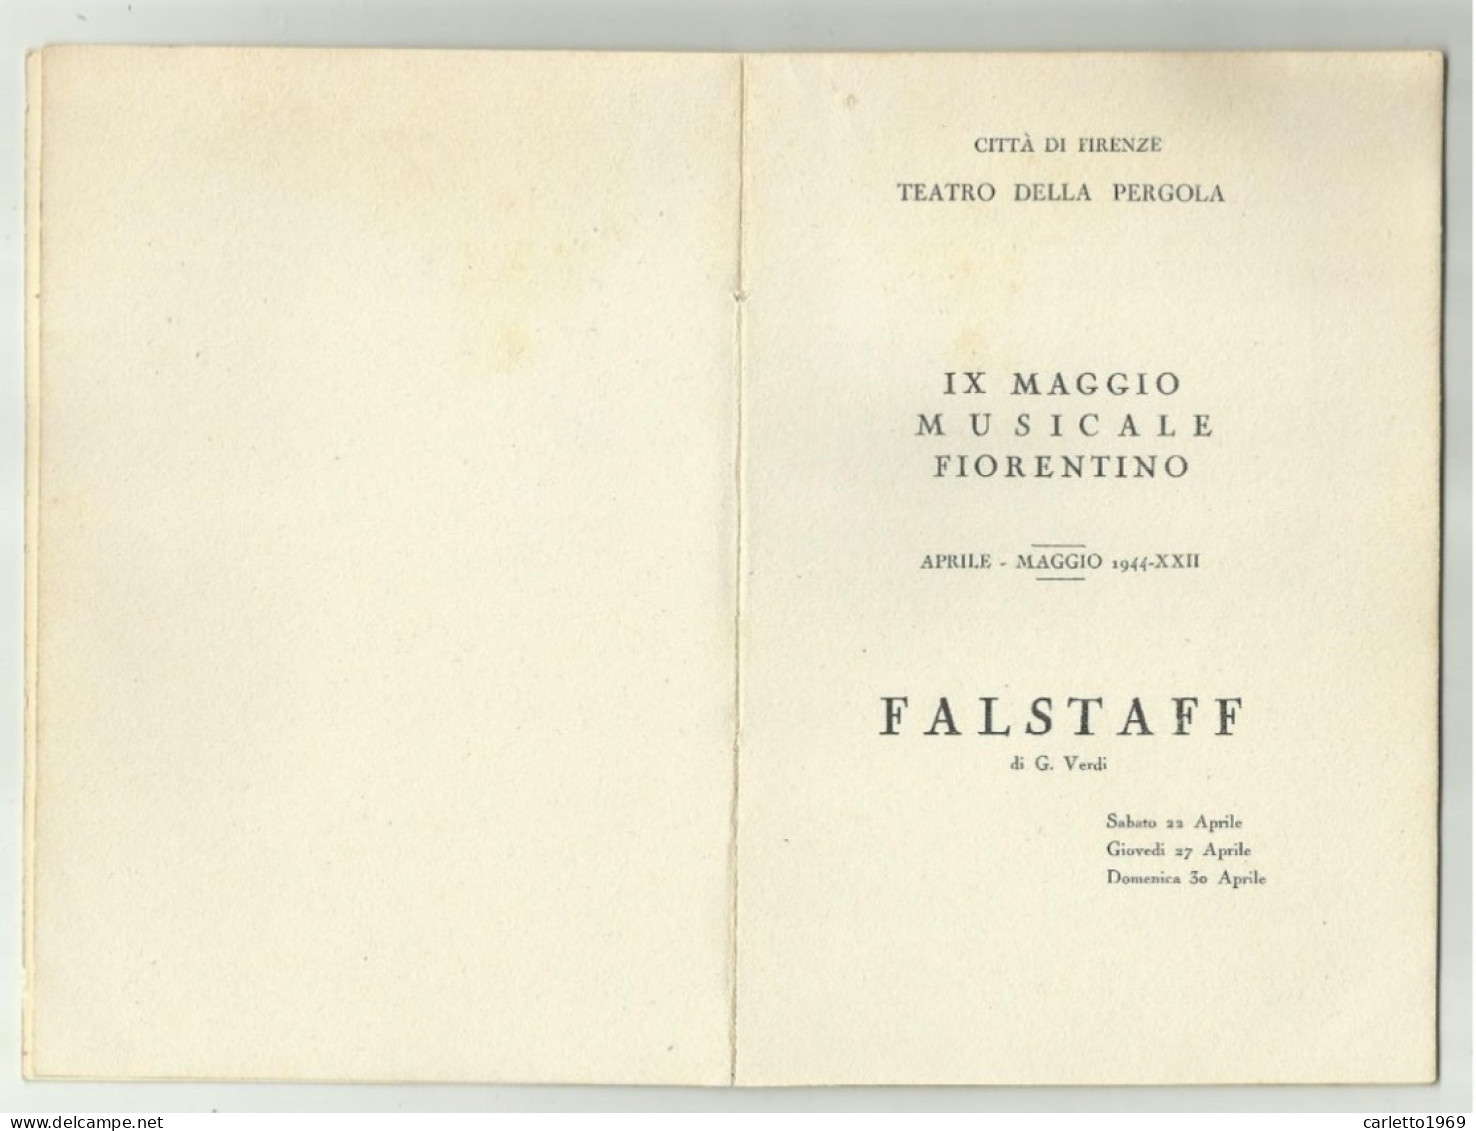 IX MAGGIO MUSICALE FIORENTINO 1944 LIBRETTO CITTA' DI FIRENZE CON TAGLIANDO POSTO POLTRONA 21 - Biglietti Per Concerti